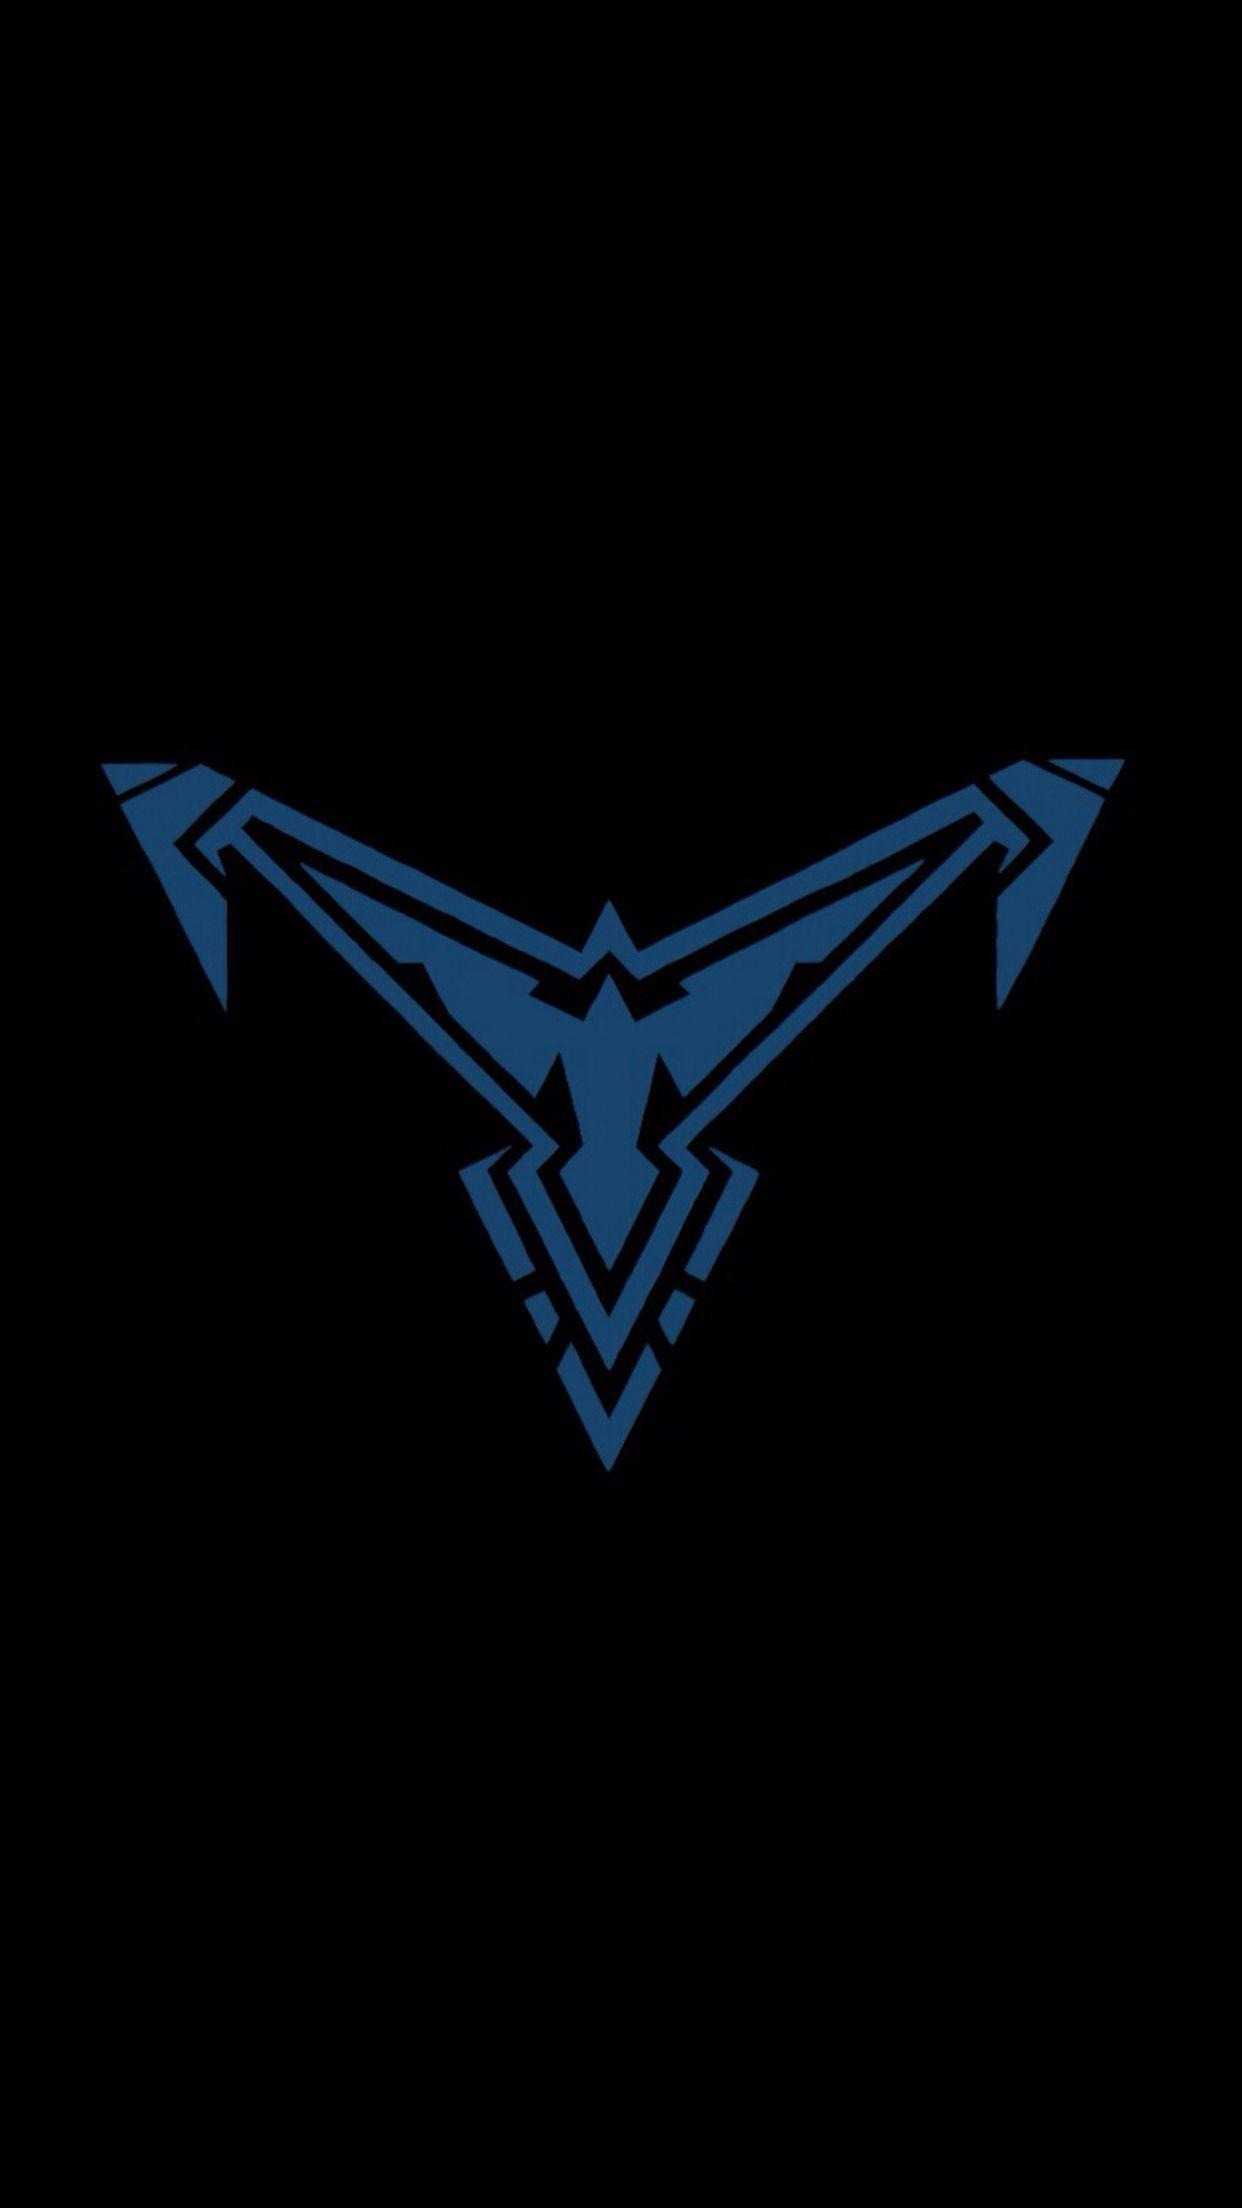 Nightwing Logo - New Nightwing logo. Comic Book Love. Nightwing, Batman